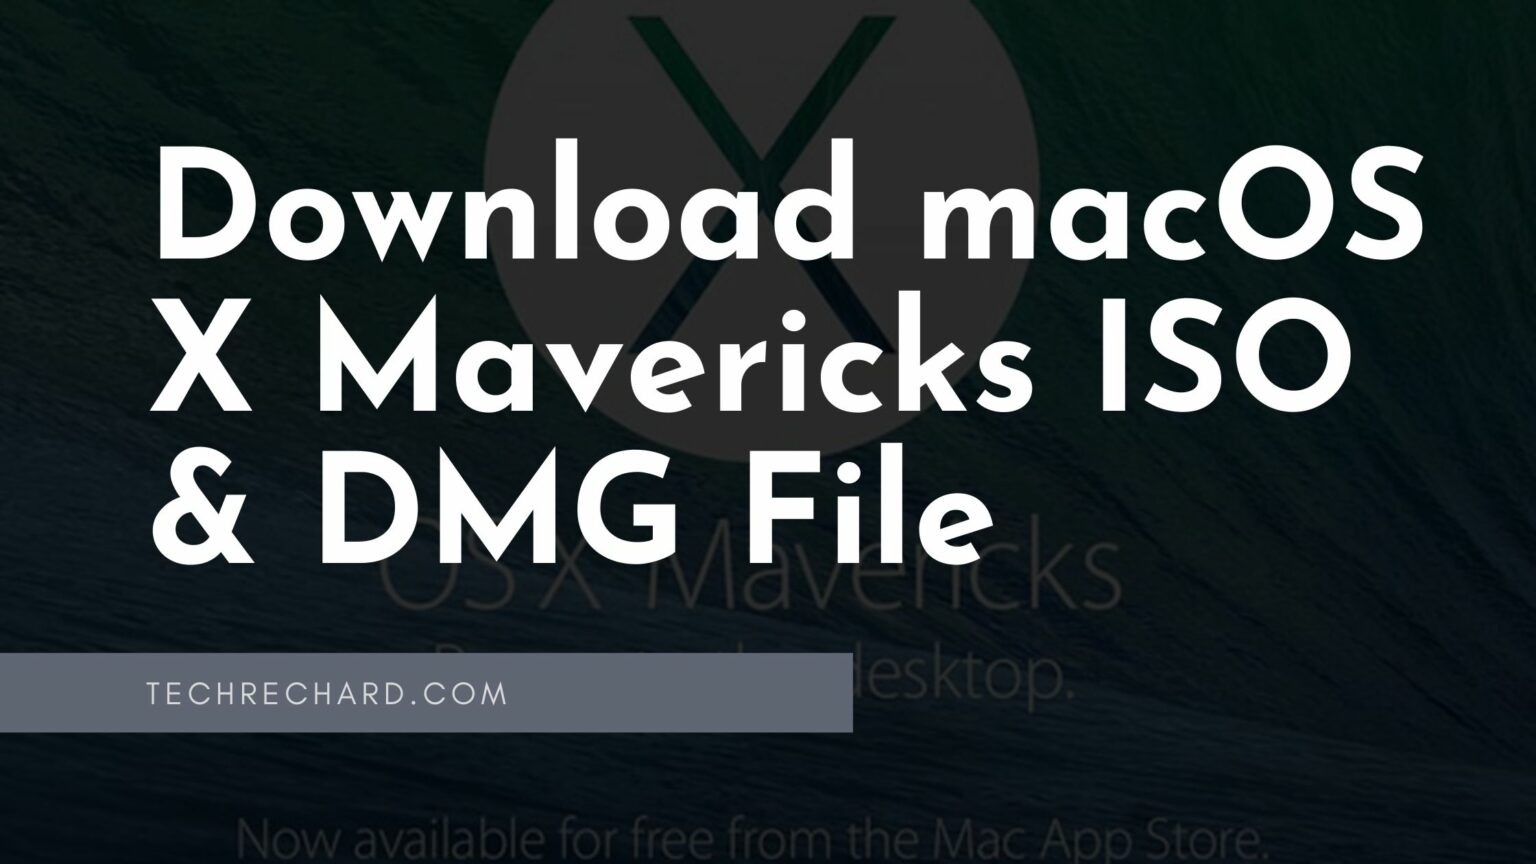 mac os x mavericks 10.9 iso and dmg image download